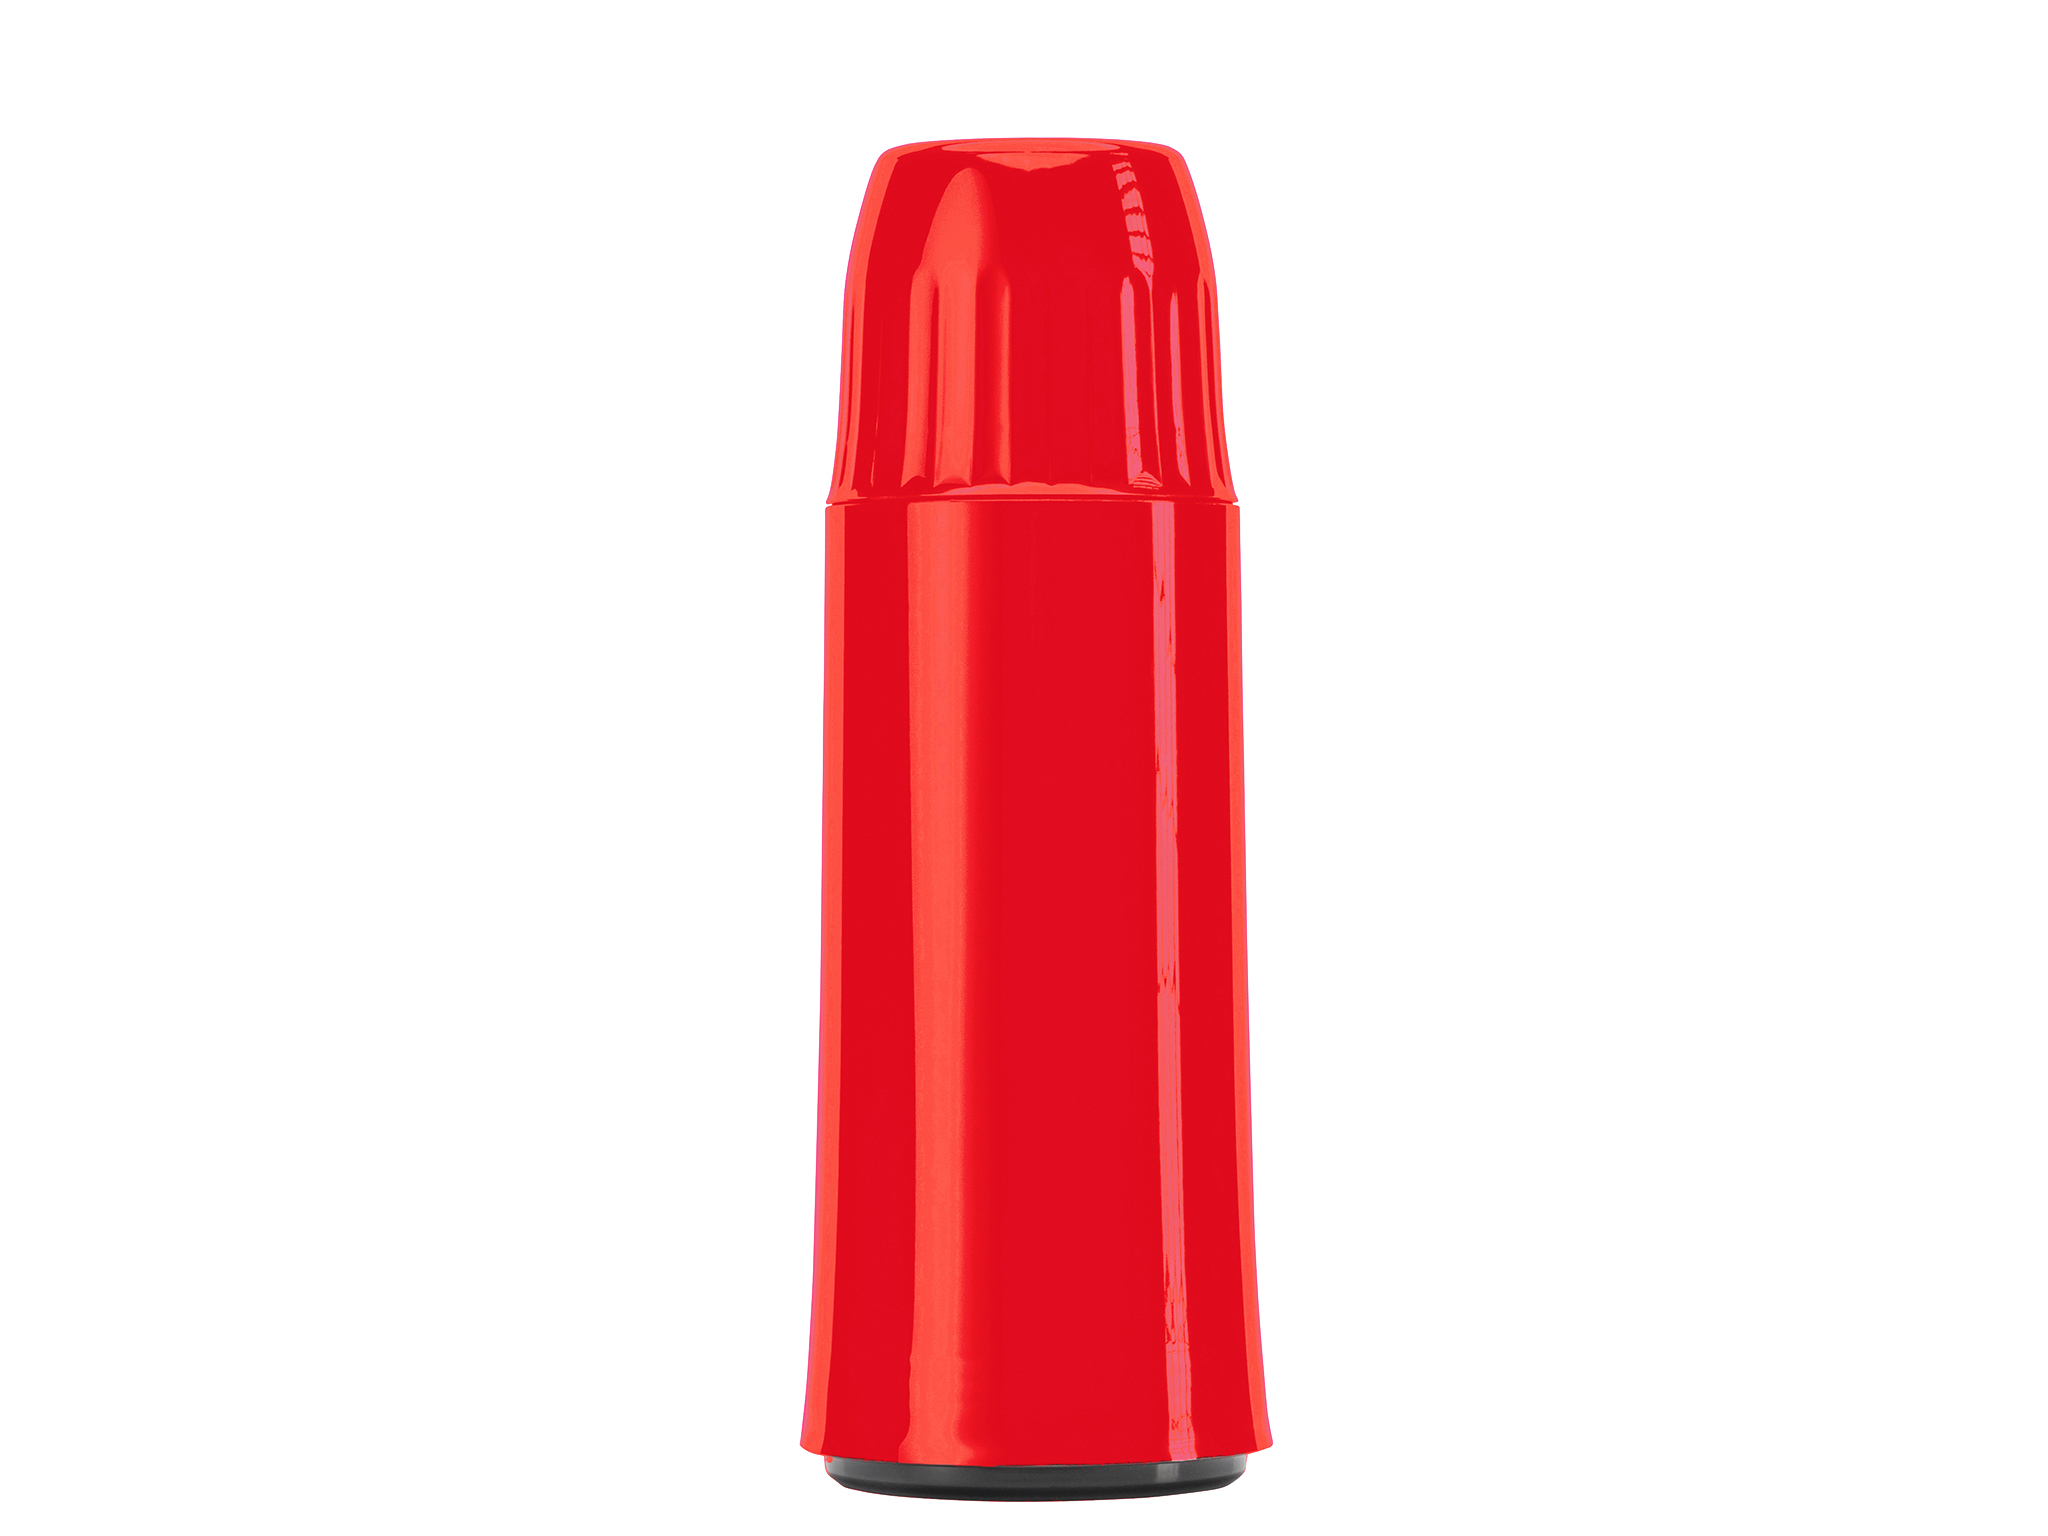 5462-011 - Vacuum flask red 0.50 L ROCKET - Helios